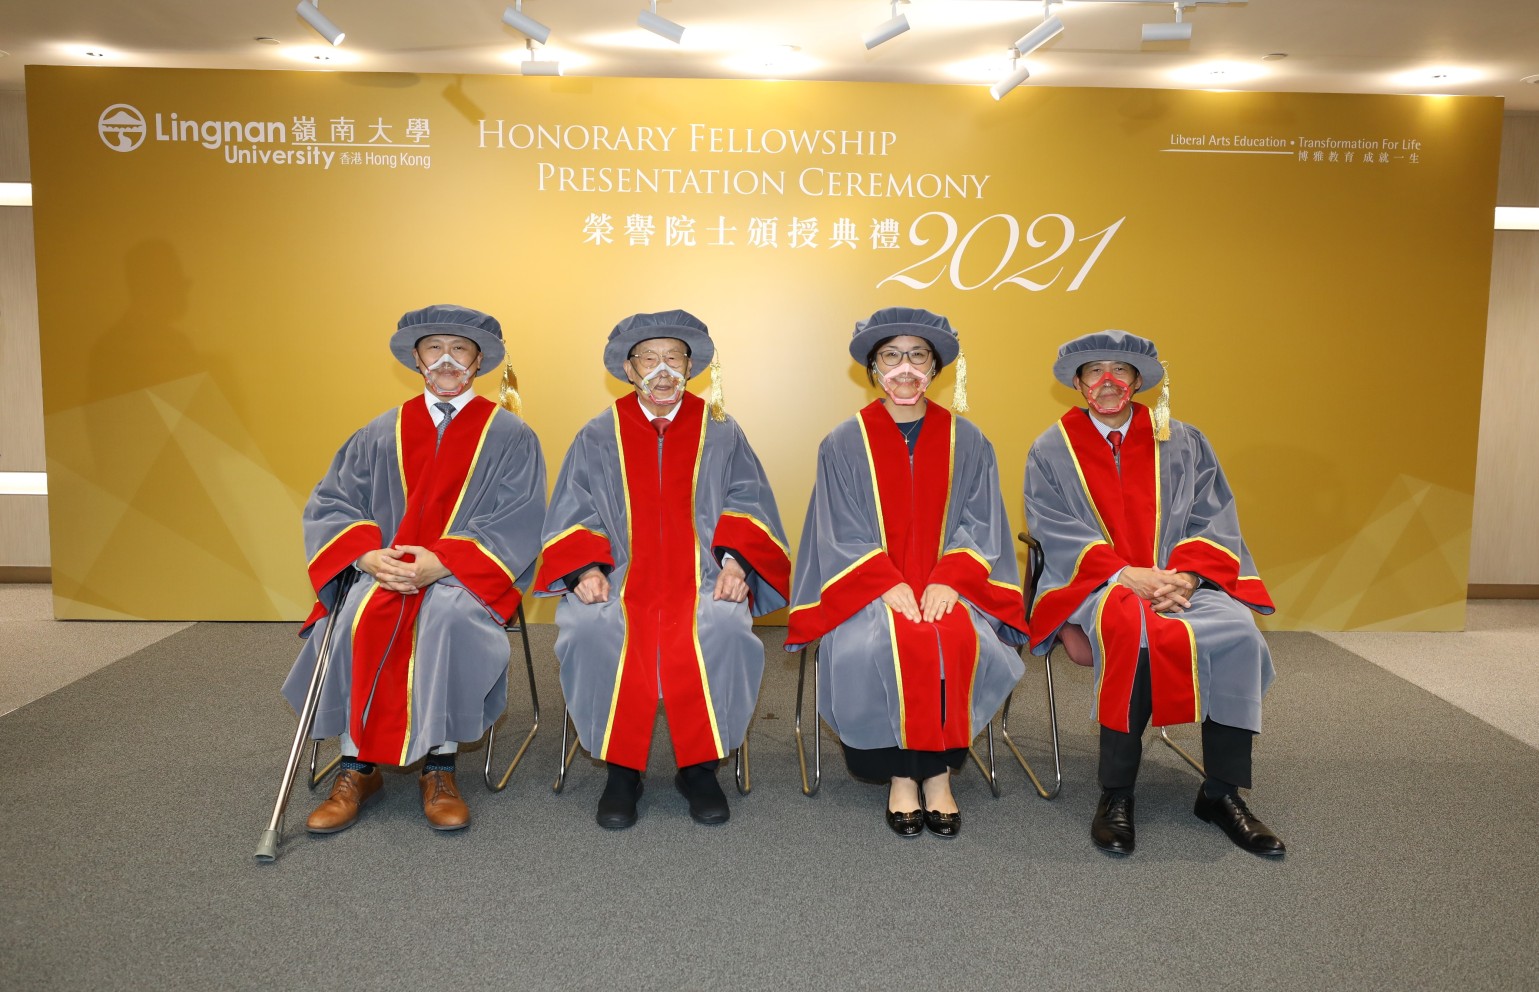 四位荣誉院士合照：（左起）叶少康先生、陈伟南先生、李美辰女士，以及叶成庆先生。